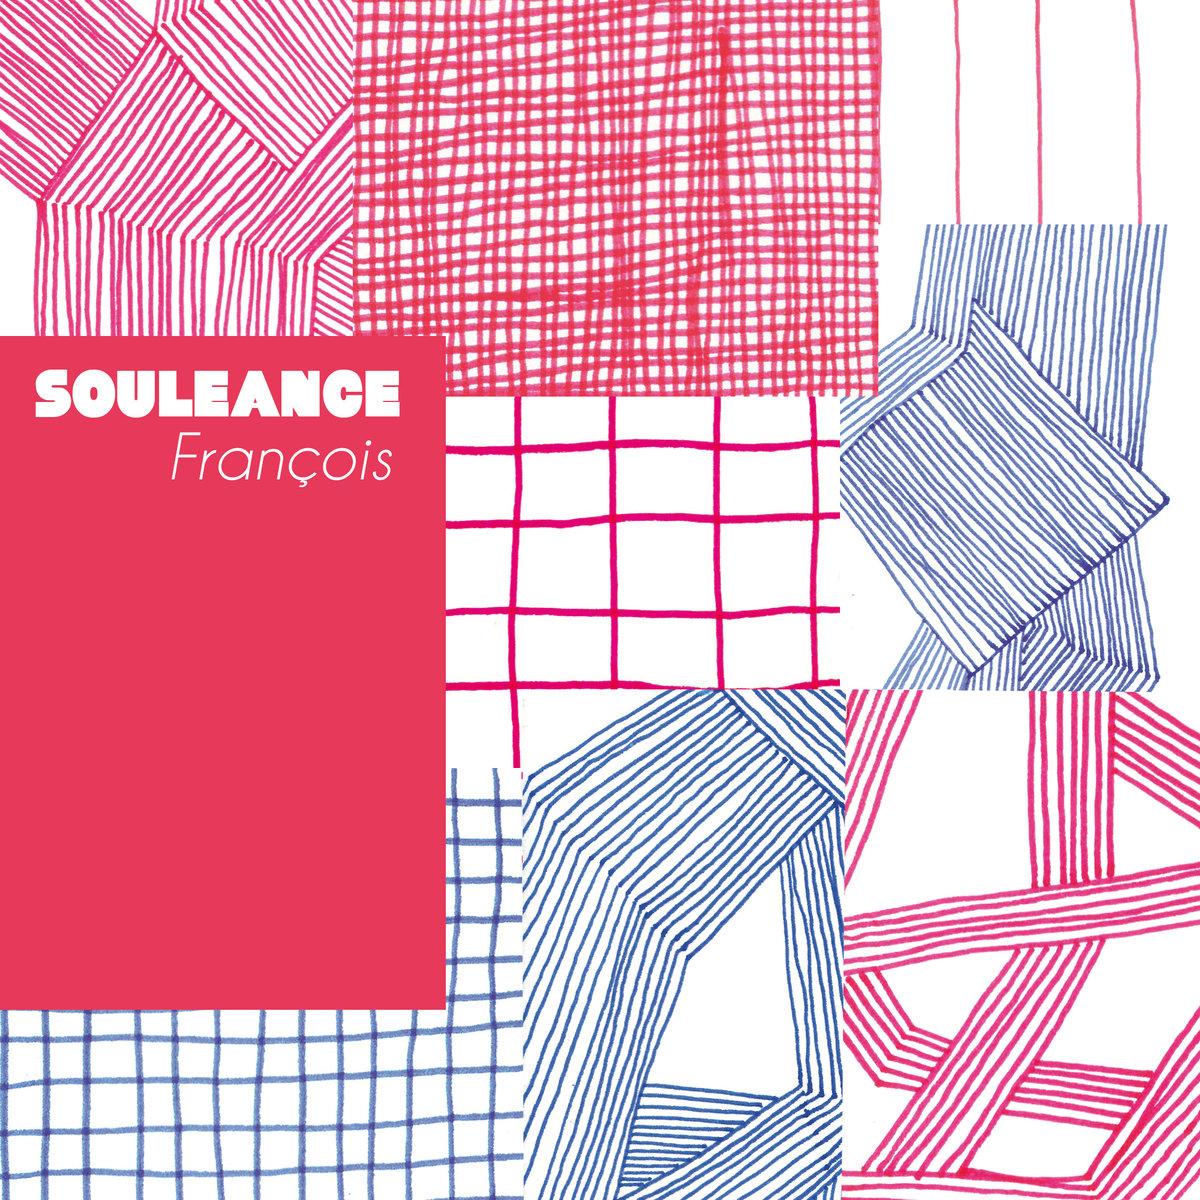 Souleance – François (The Find Premiere)